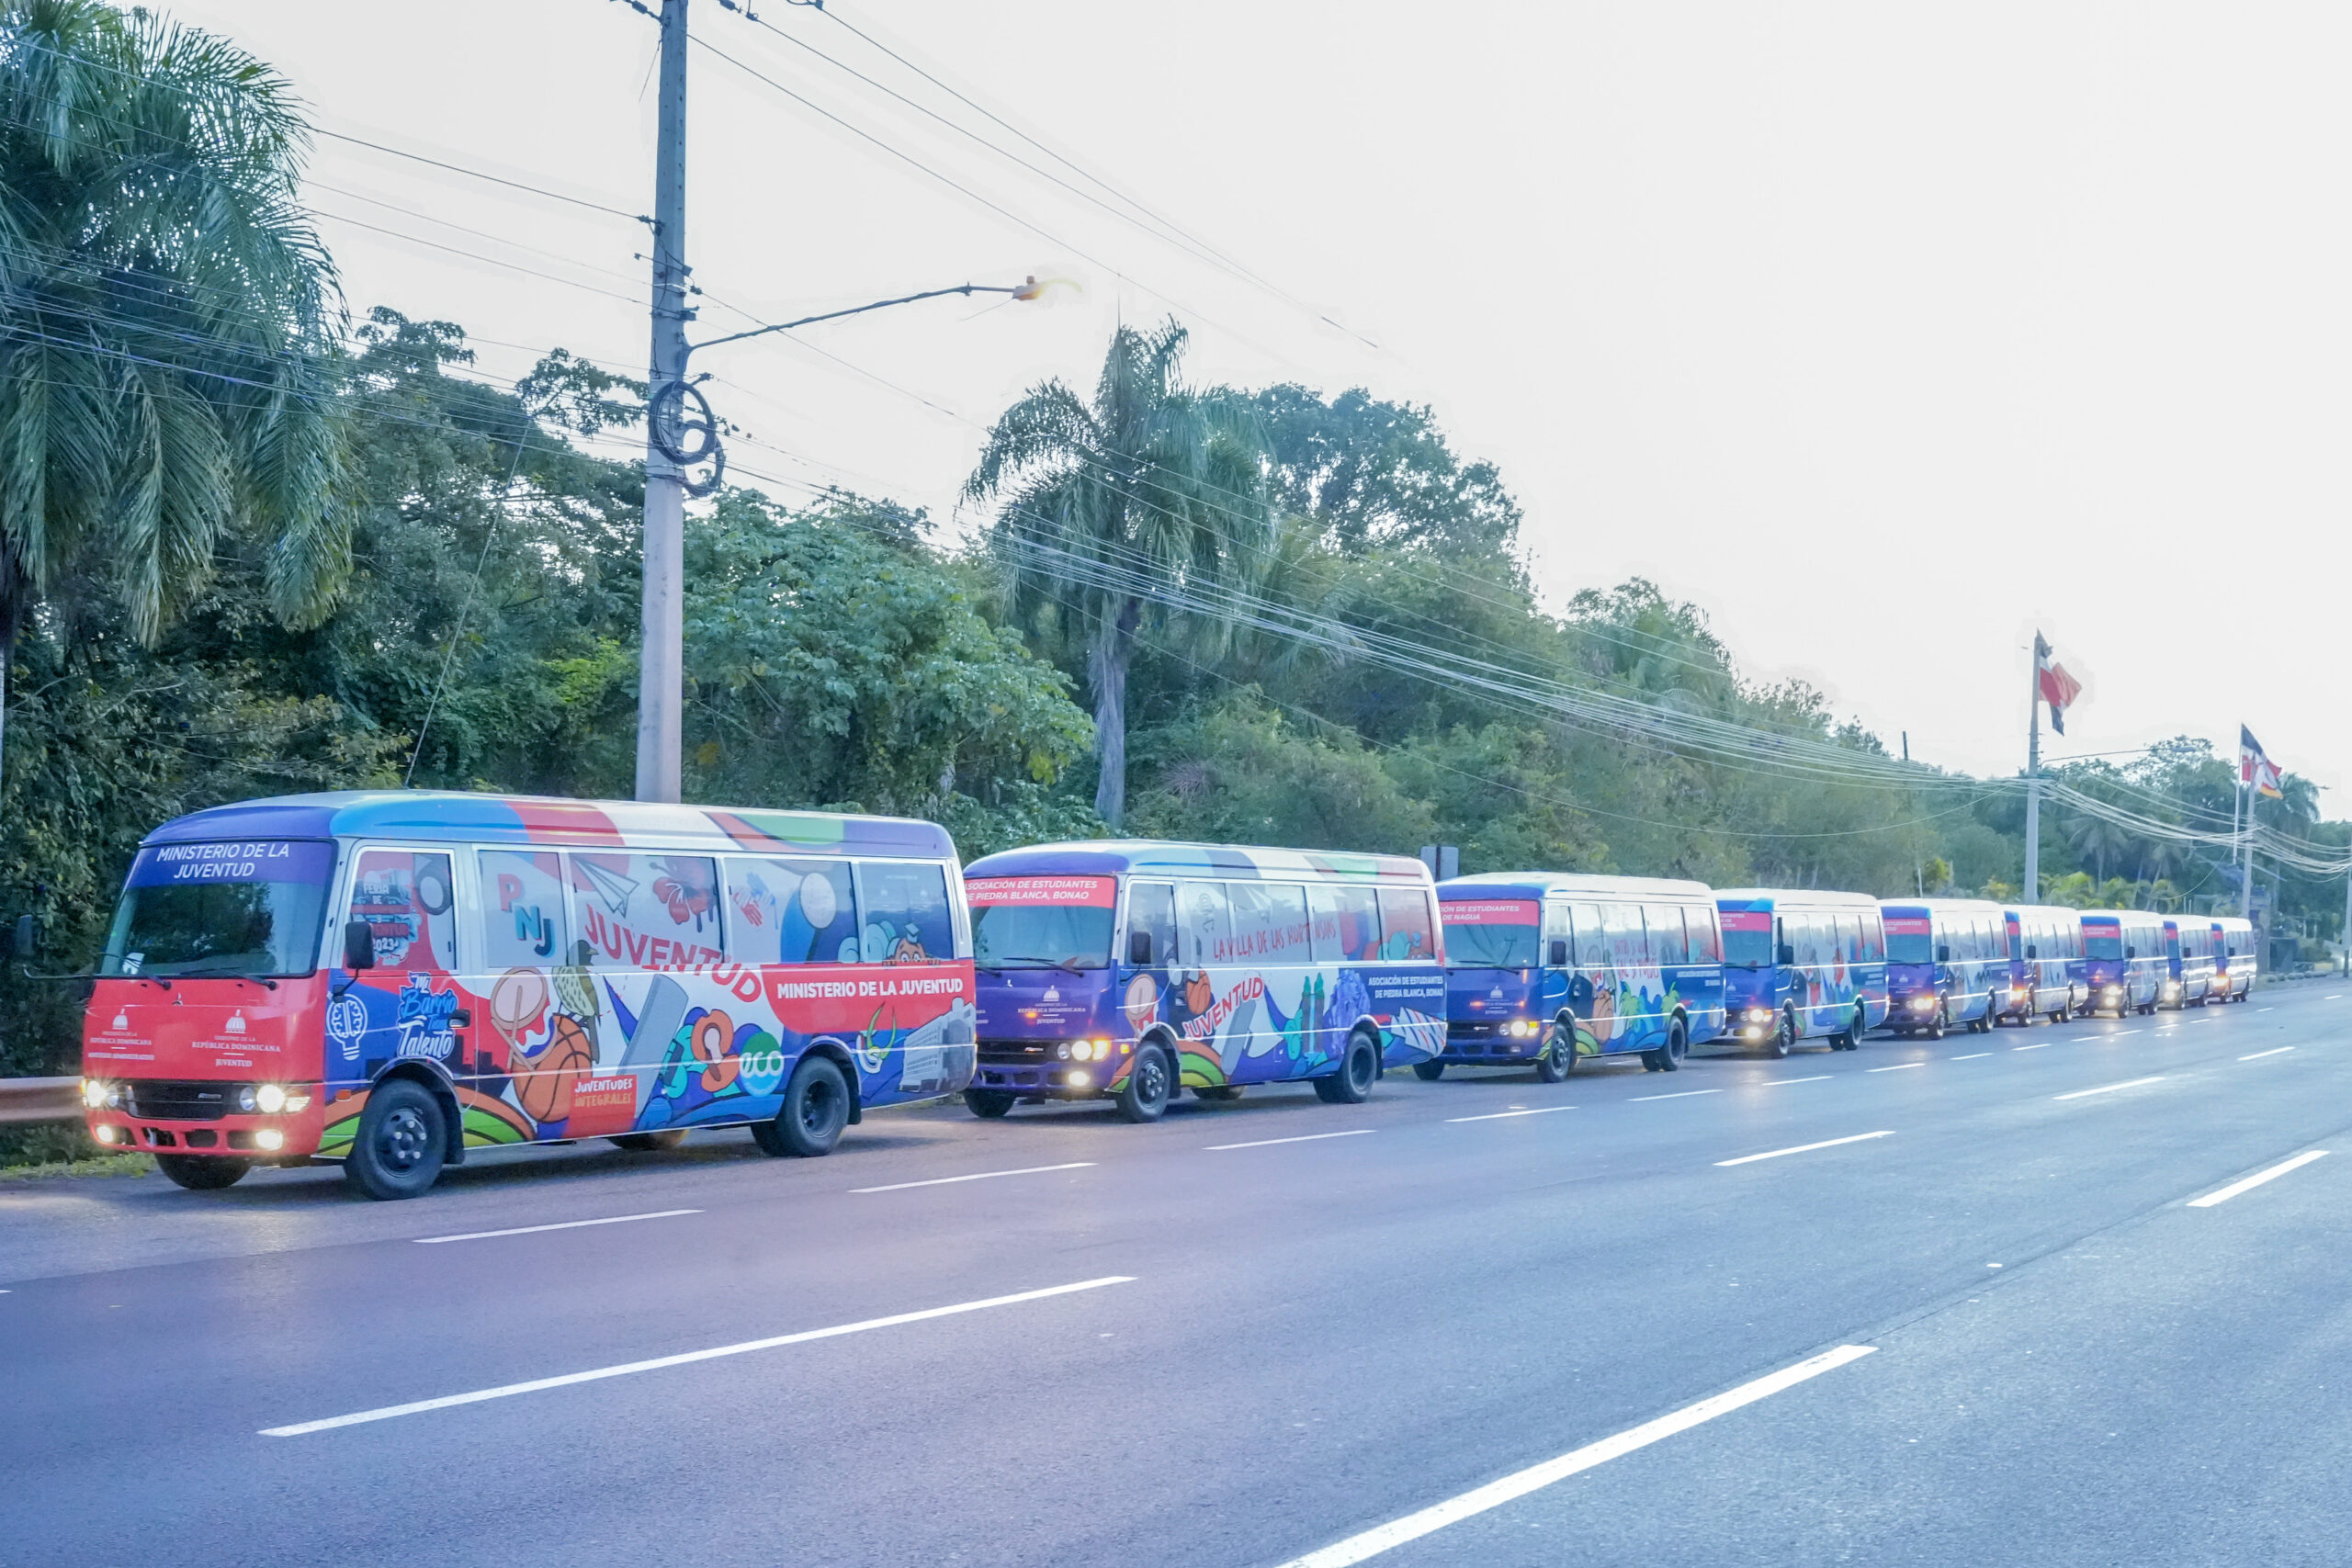 REPÚBLICA DOMINICANA: Ministerio de la Juventud entrega 50 modernos autobuses que beneficiarán a más de 56,000 jóvenes